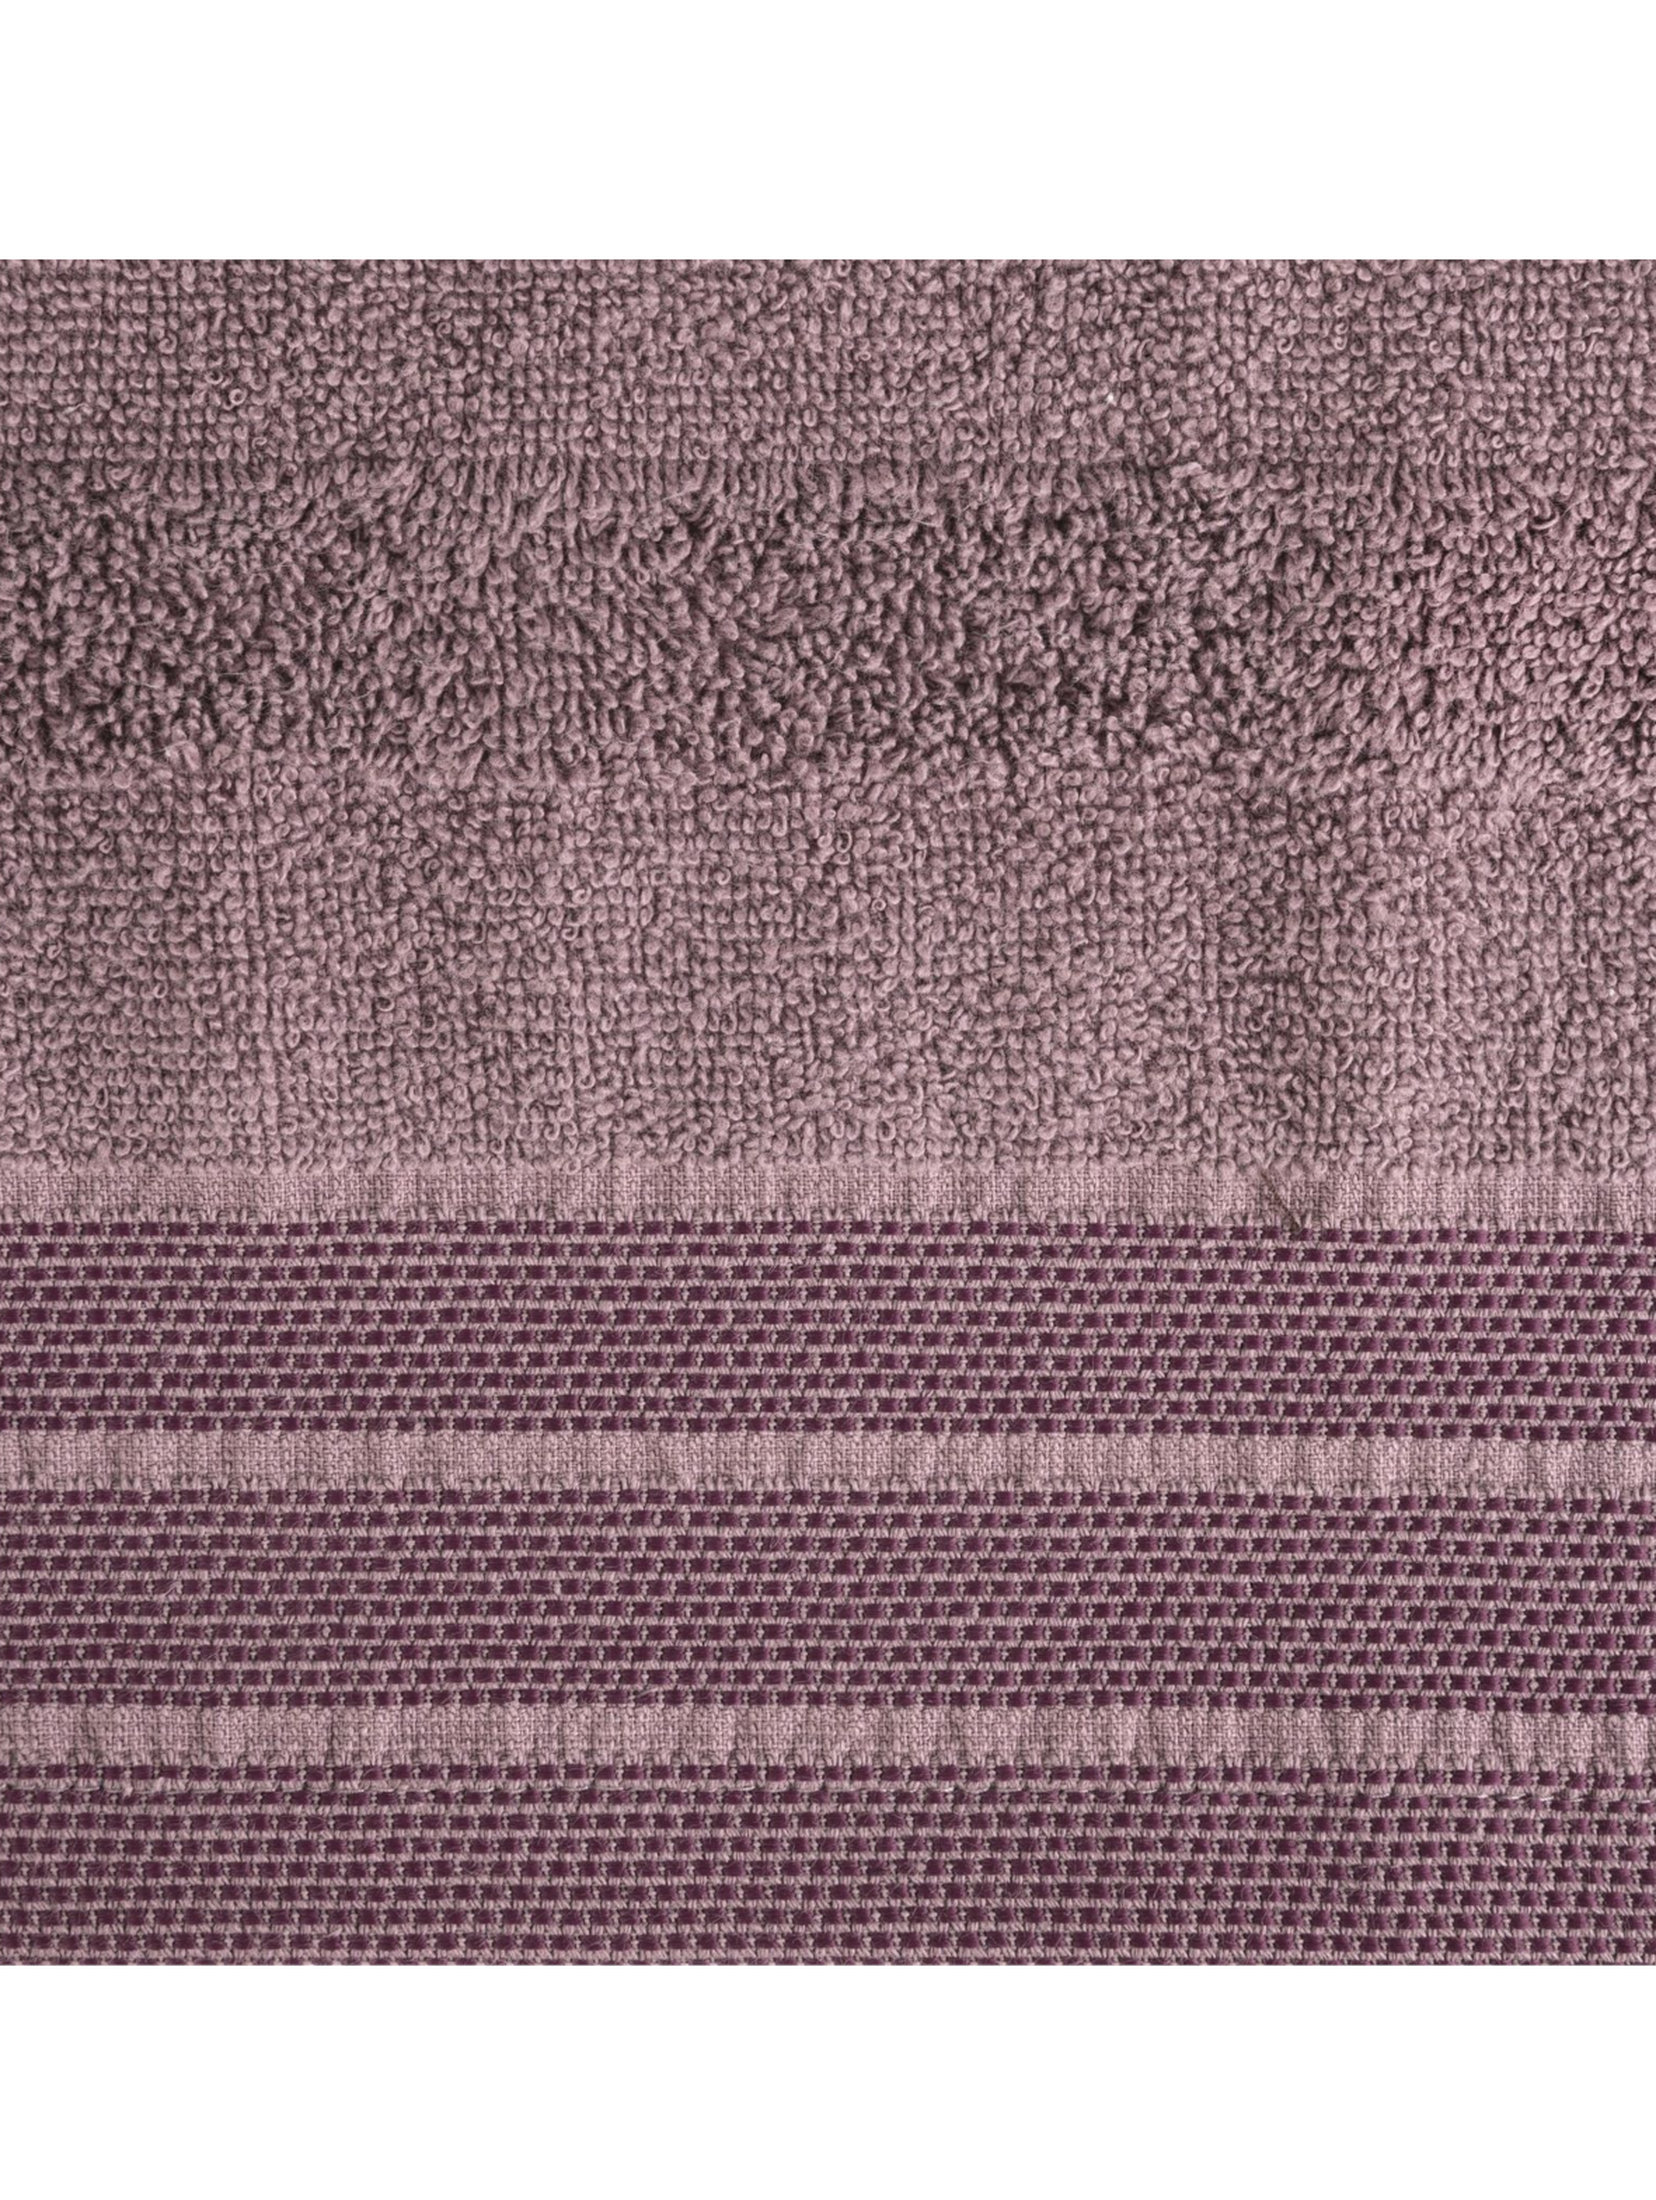 Liliowy ręcznik zdobiony pasami 50x90 cm